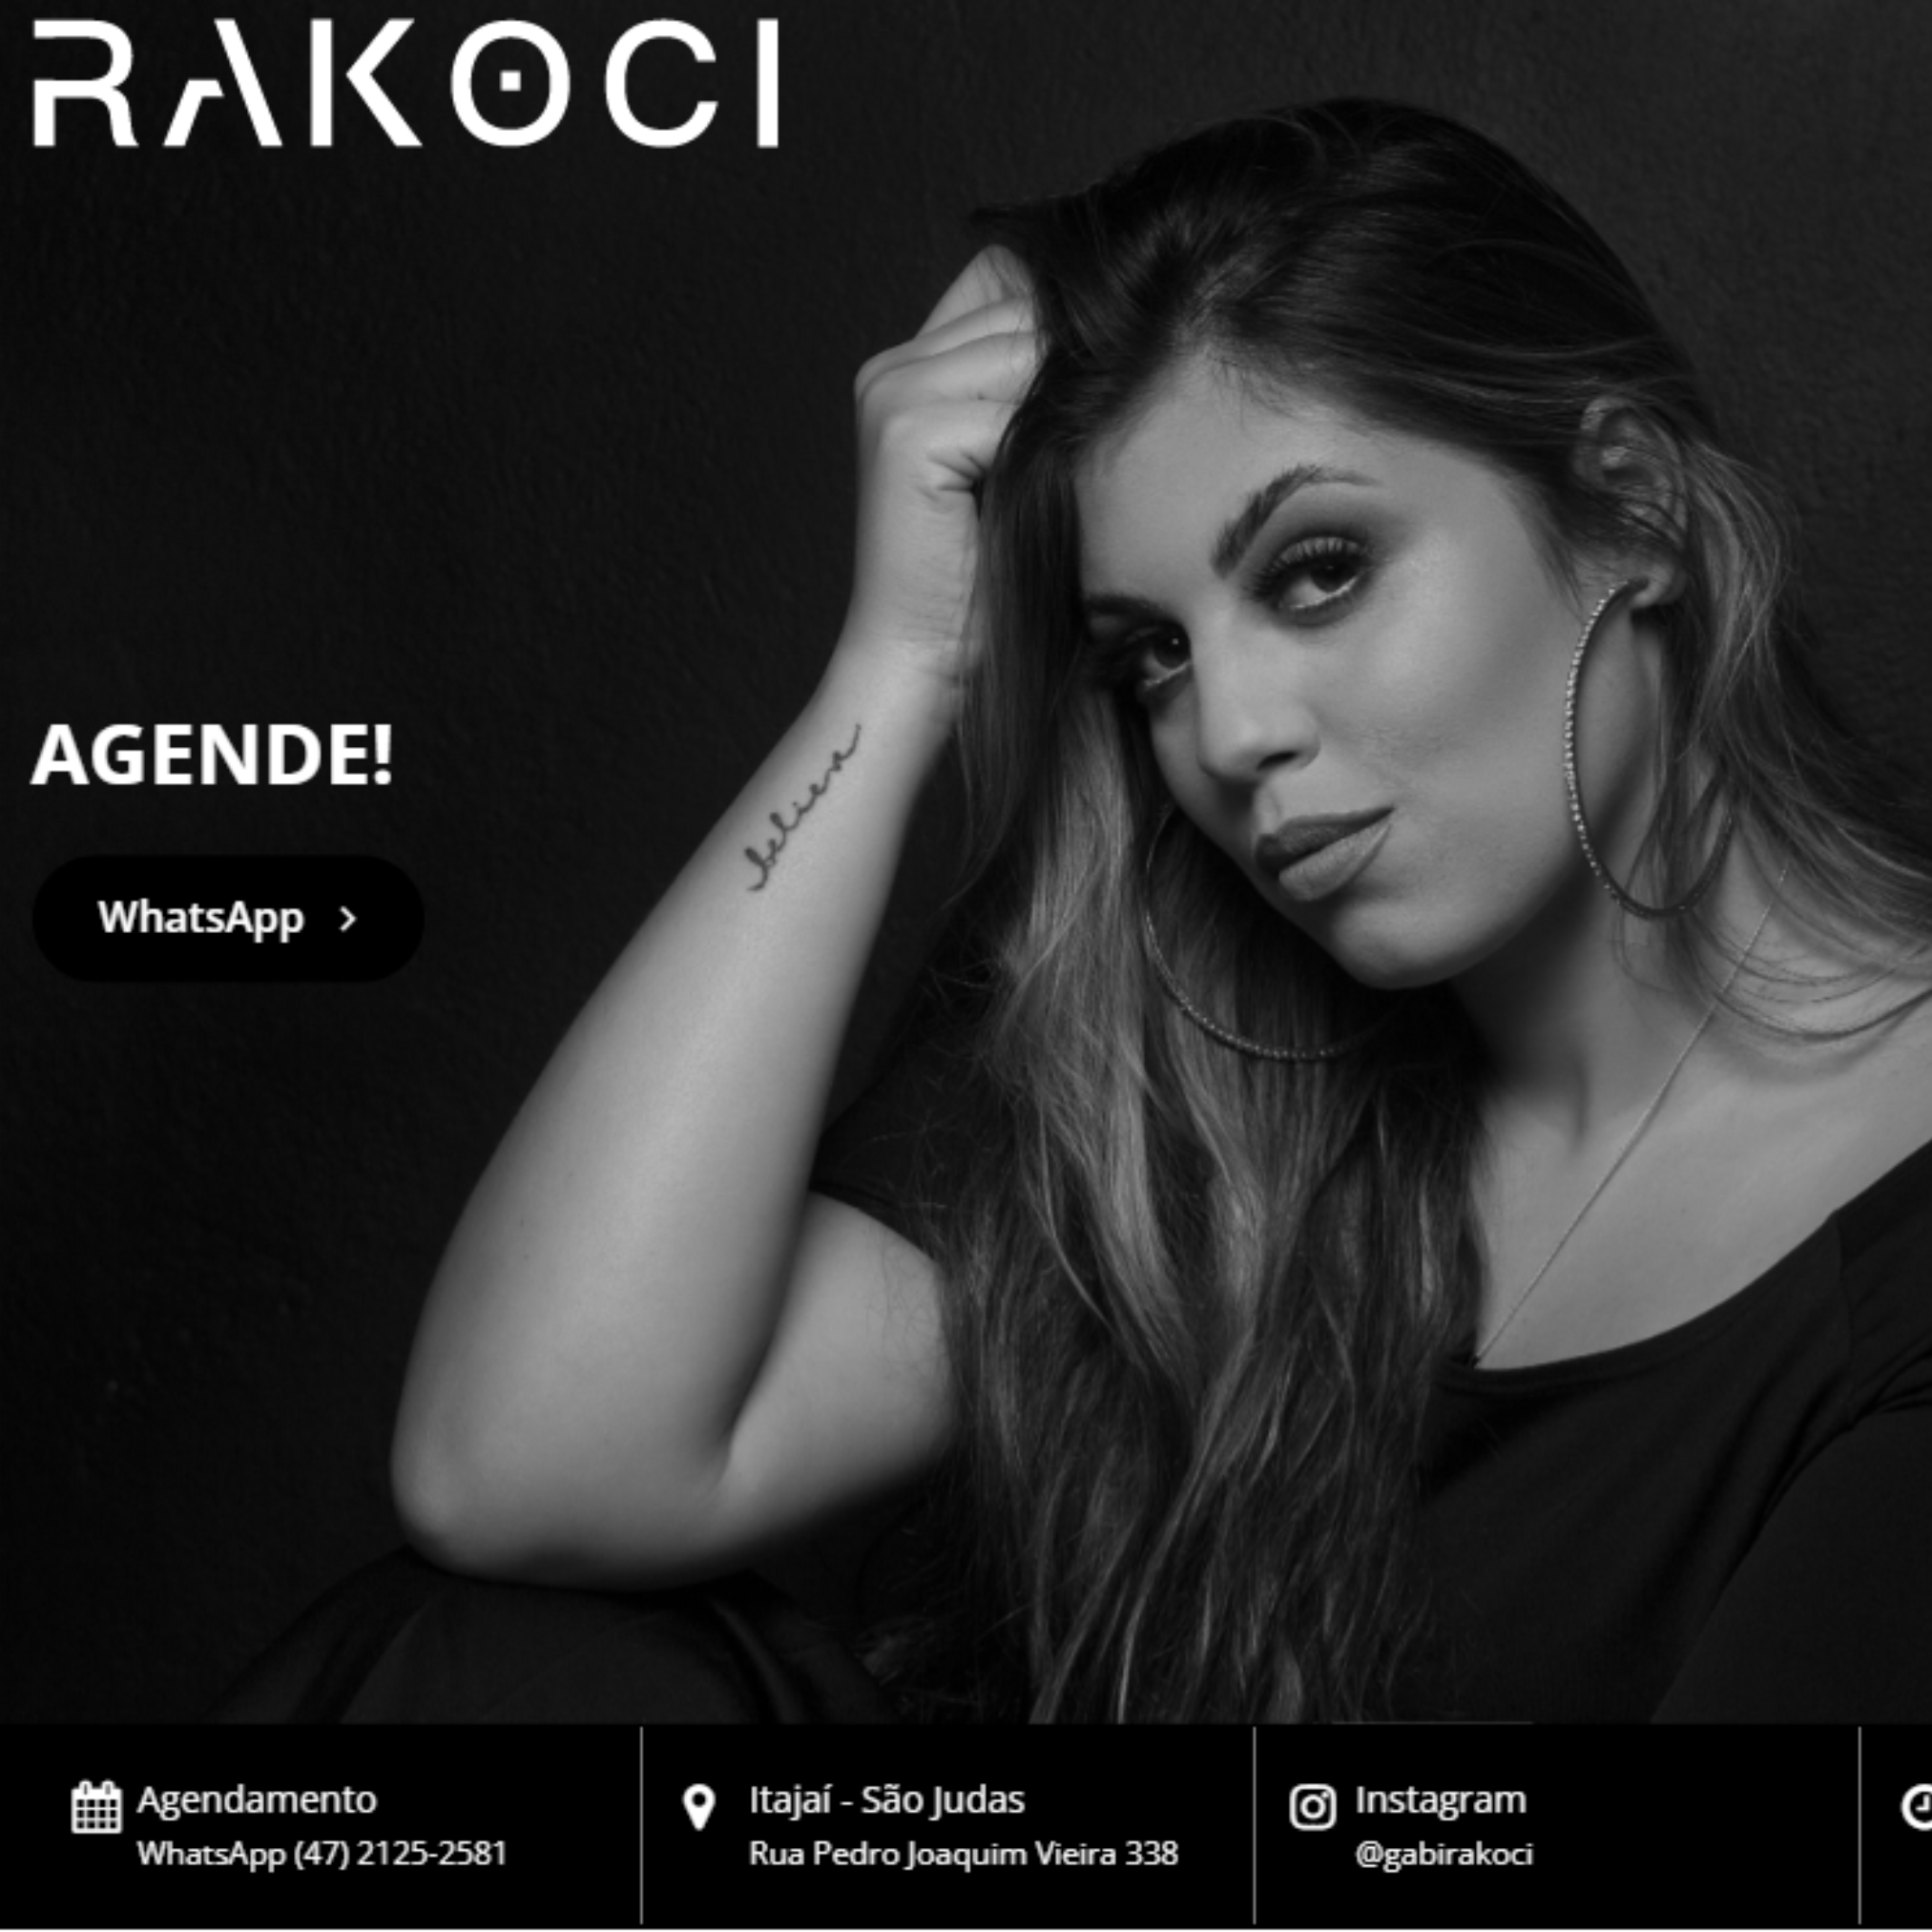 Gabriela Rakoci Website Expert Marketing